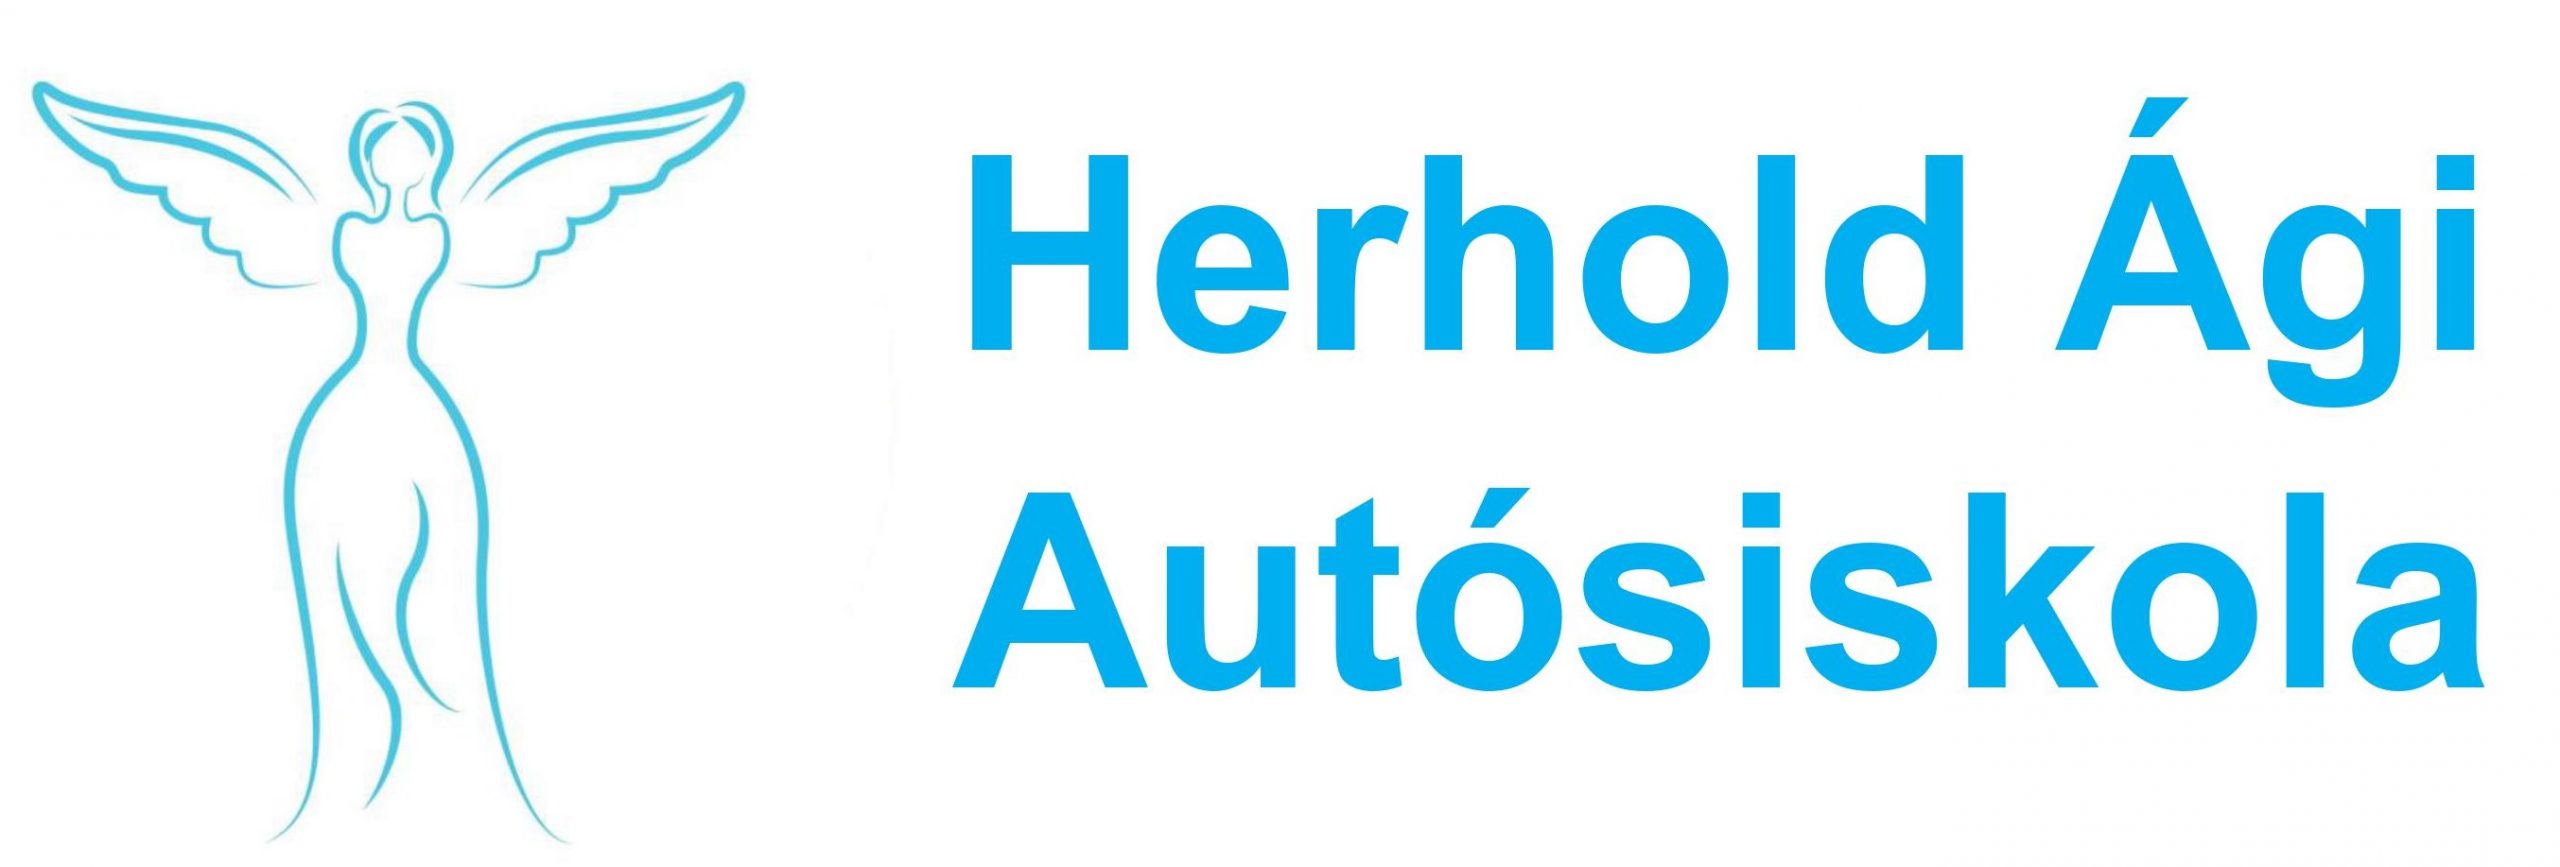 Herhold Autósiskola